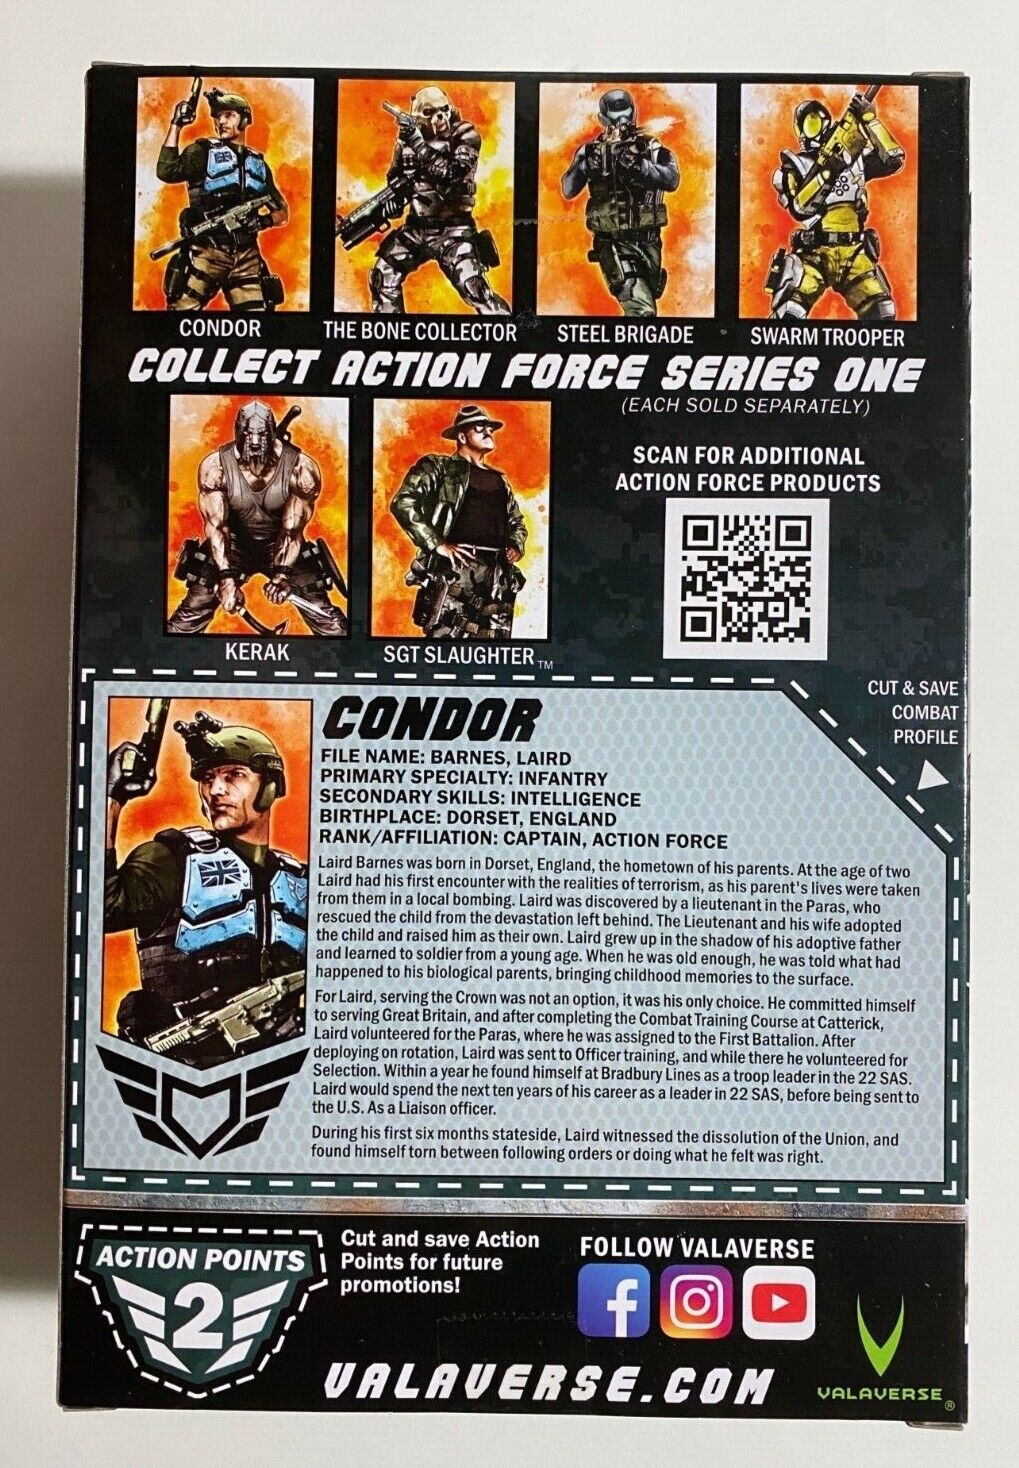 Valaverse Action Force Condor 1/12 Collectible Action Figure - Open Box